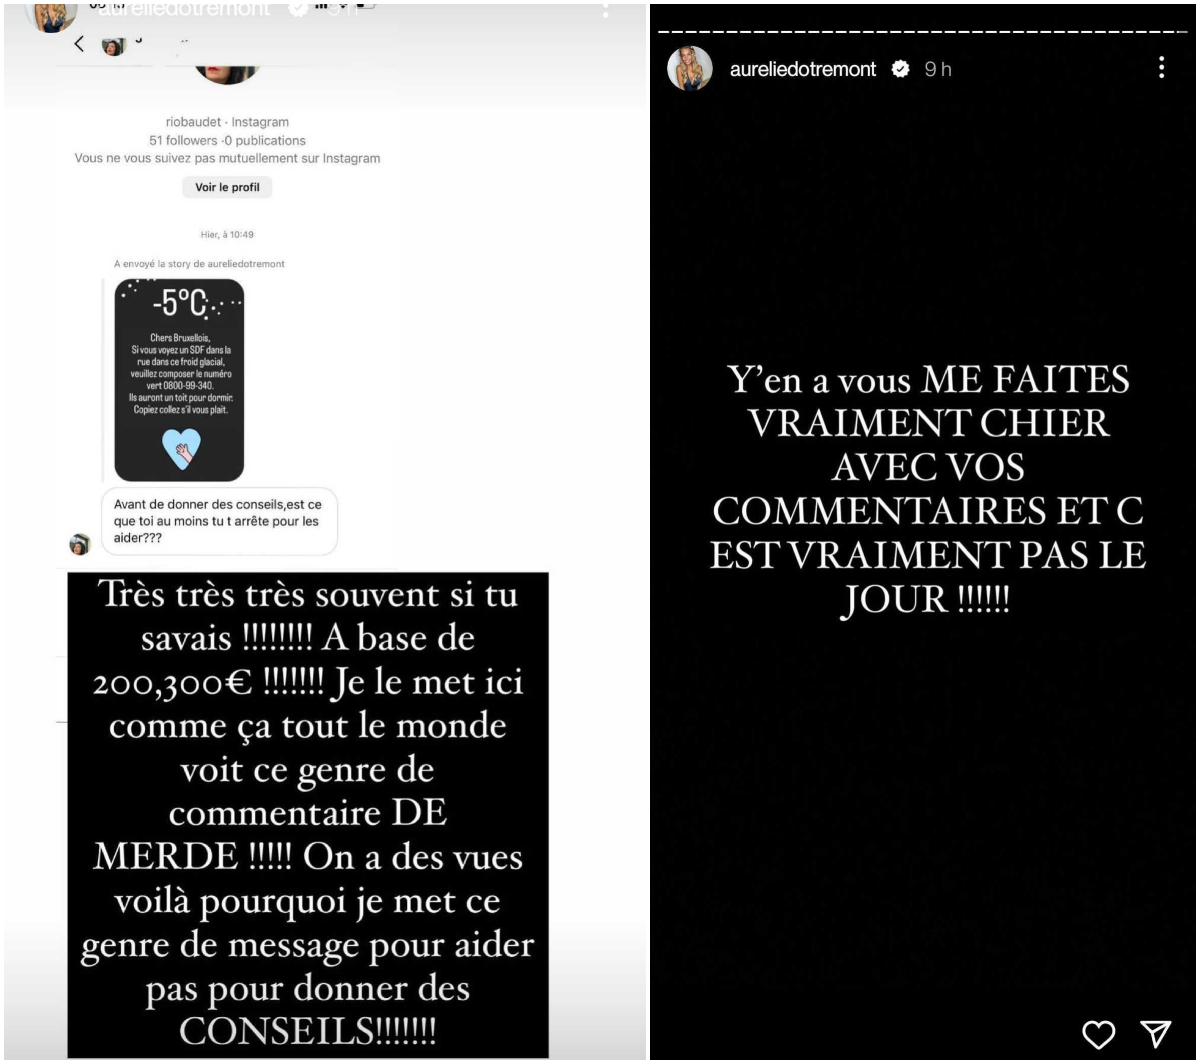 Aurélie Dotremont critiquée par une internaute, elle réplique : "Vous me faites vraiment chier"